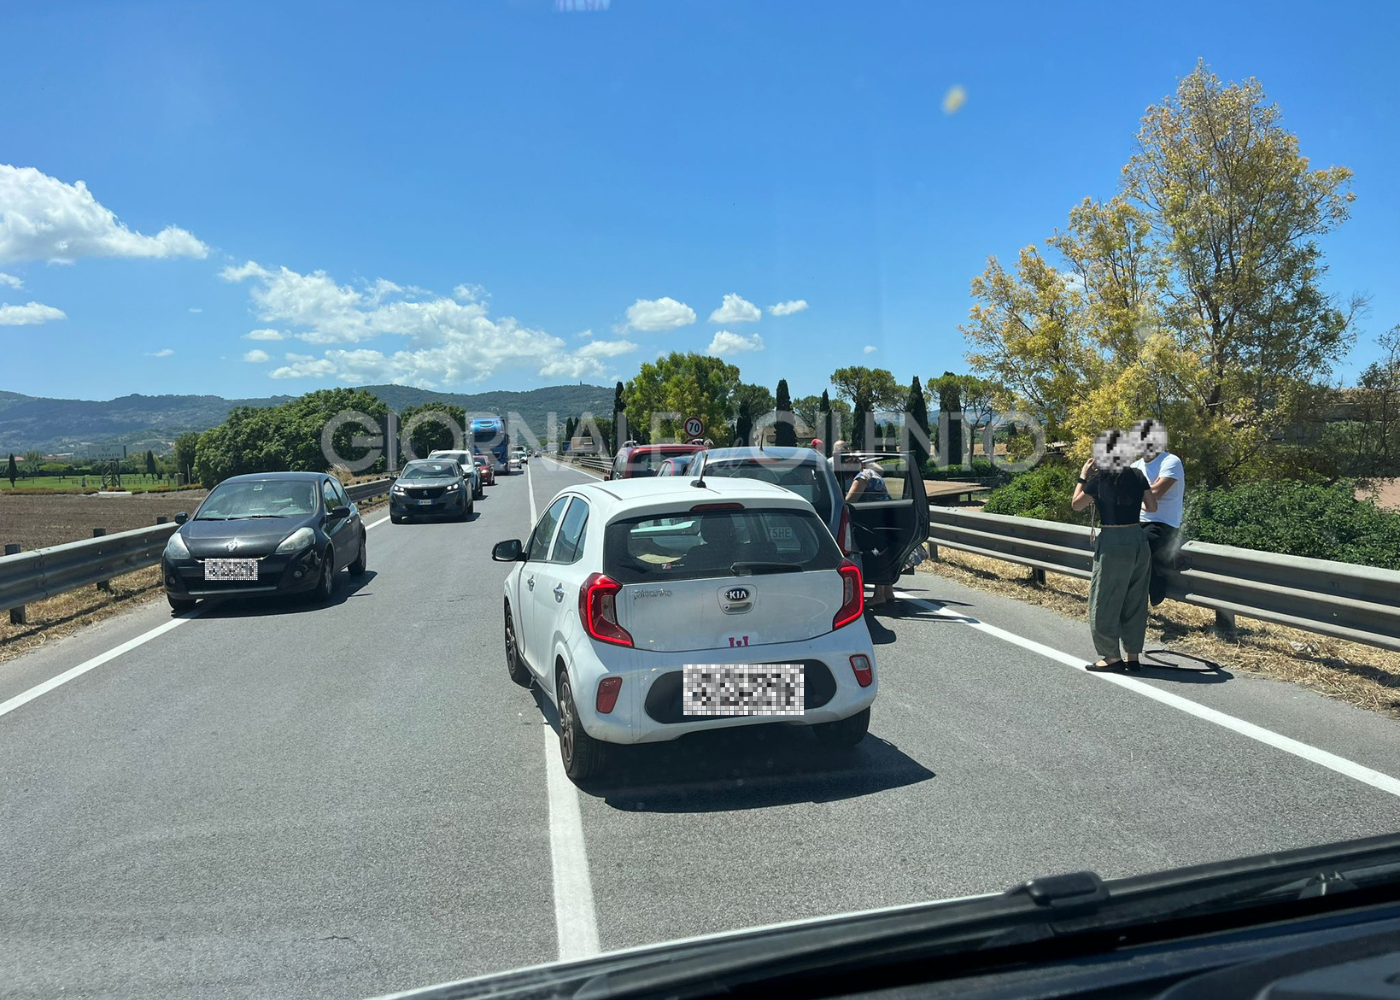 Tamponamento lungo la strada statale 18 a Capaccio: 4 veicoli coinvolti